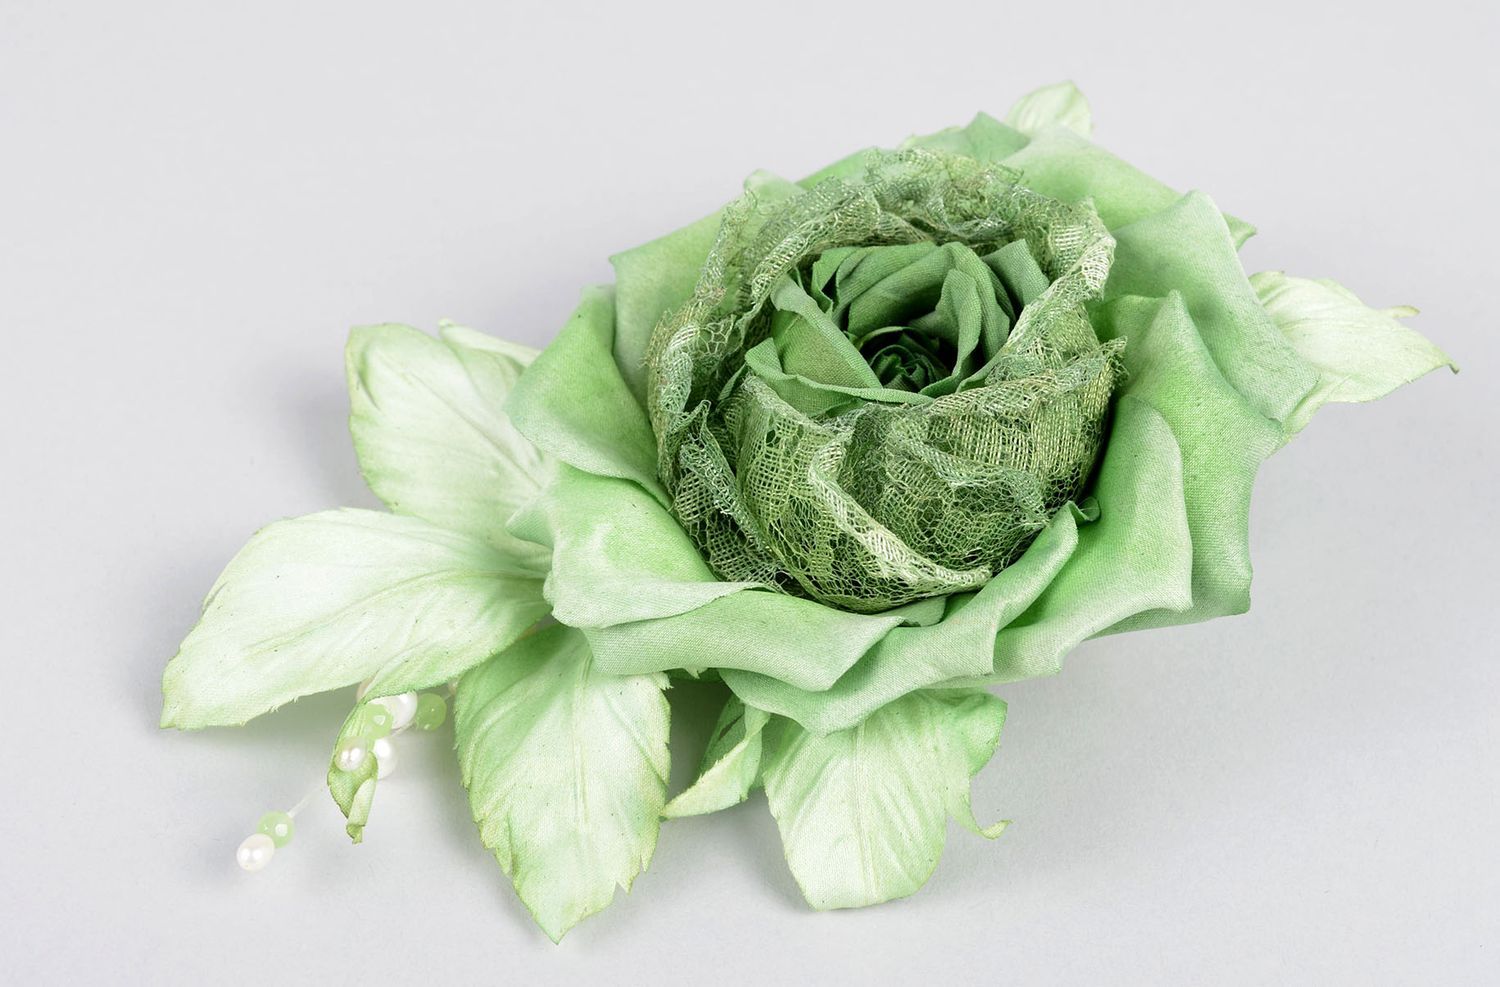 Брошь ручной работы зеленая брошь-цветок авторское дизайнерское украшение фото 1